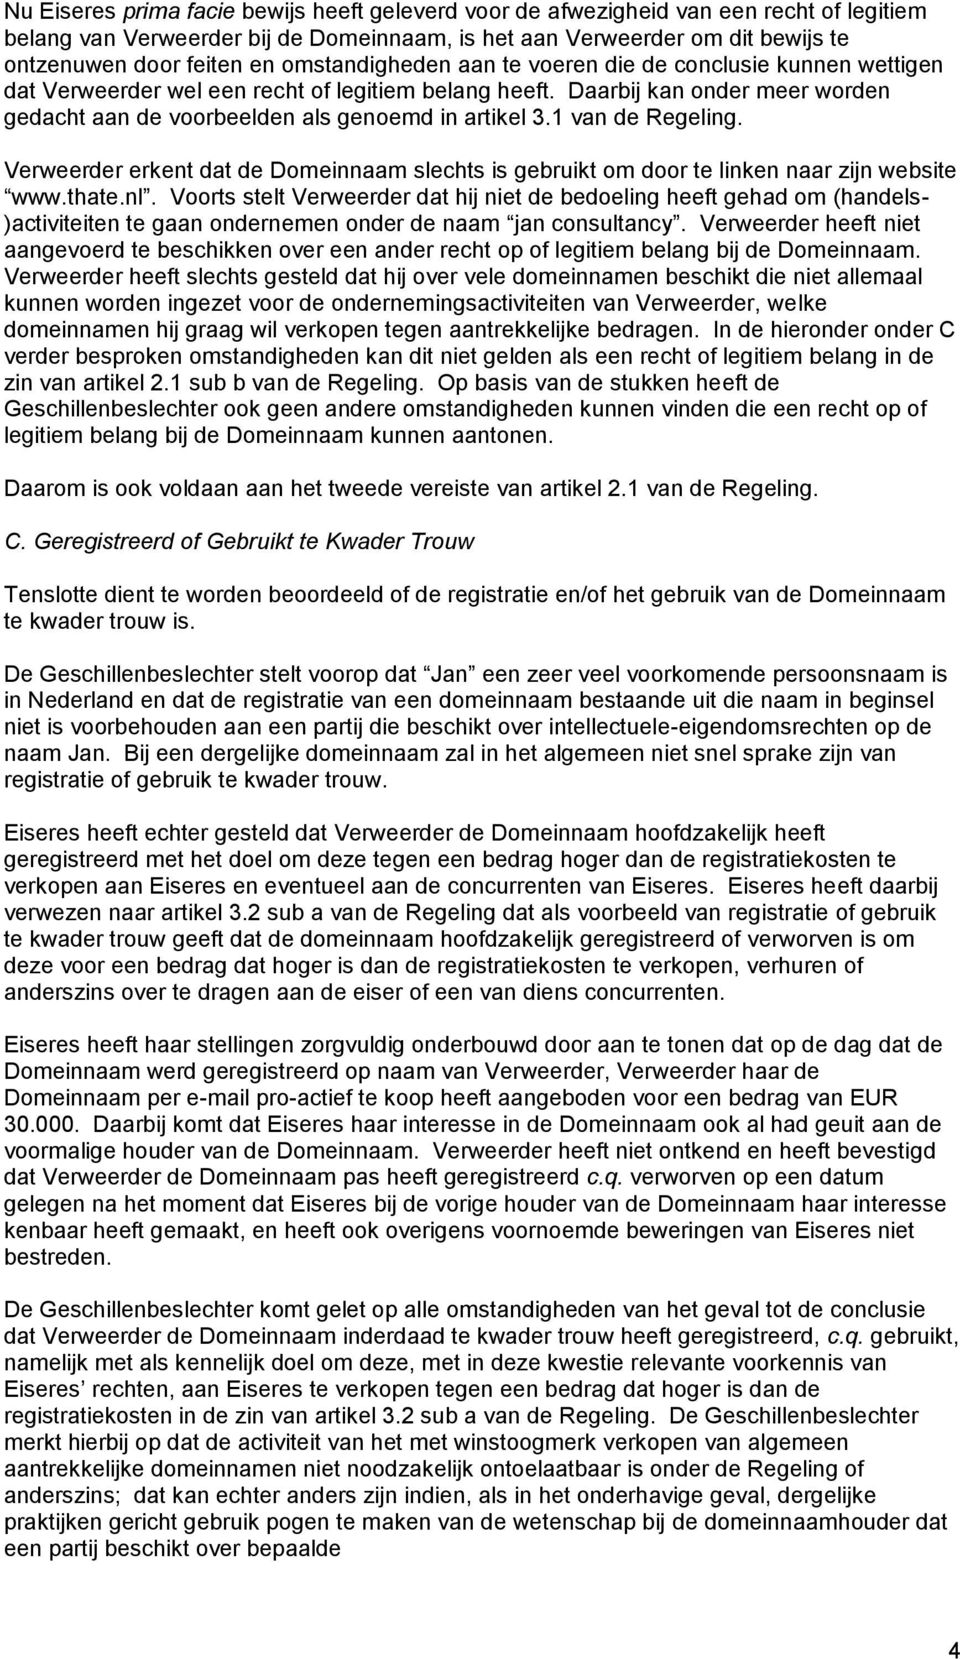 1 van de Regeling. Verweerder erkent dat de Domeinnaam slechts is gebruikt om door te linken naar zijn website www.thate.nl.